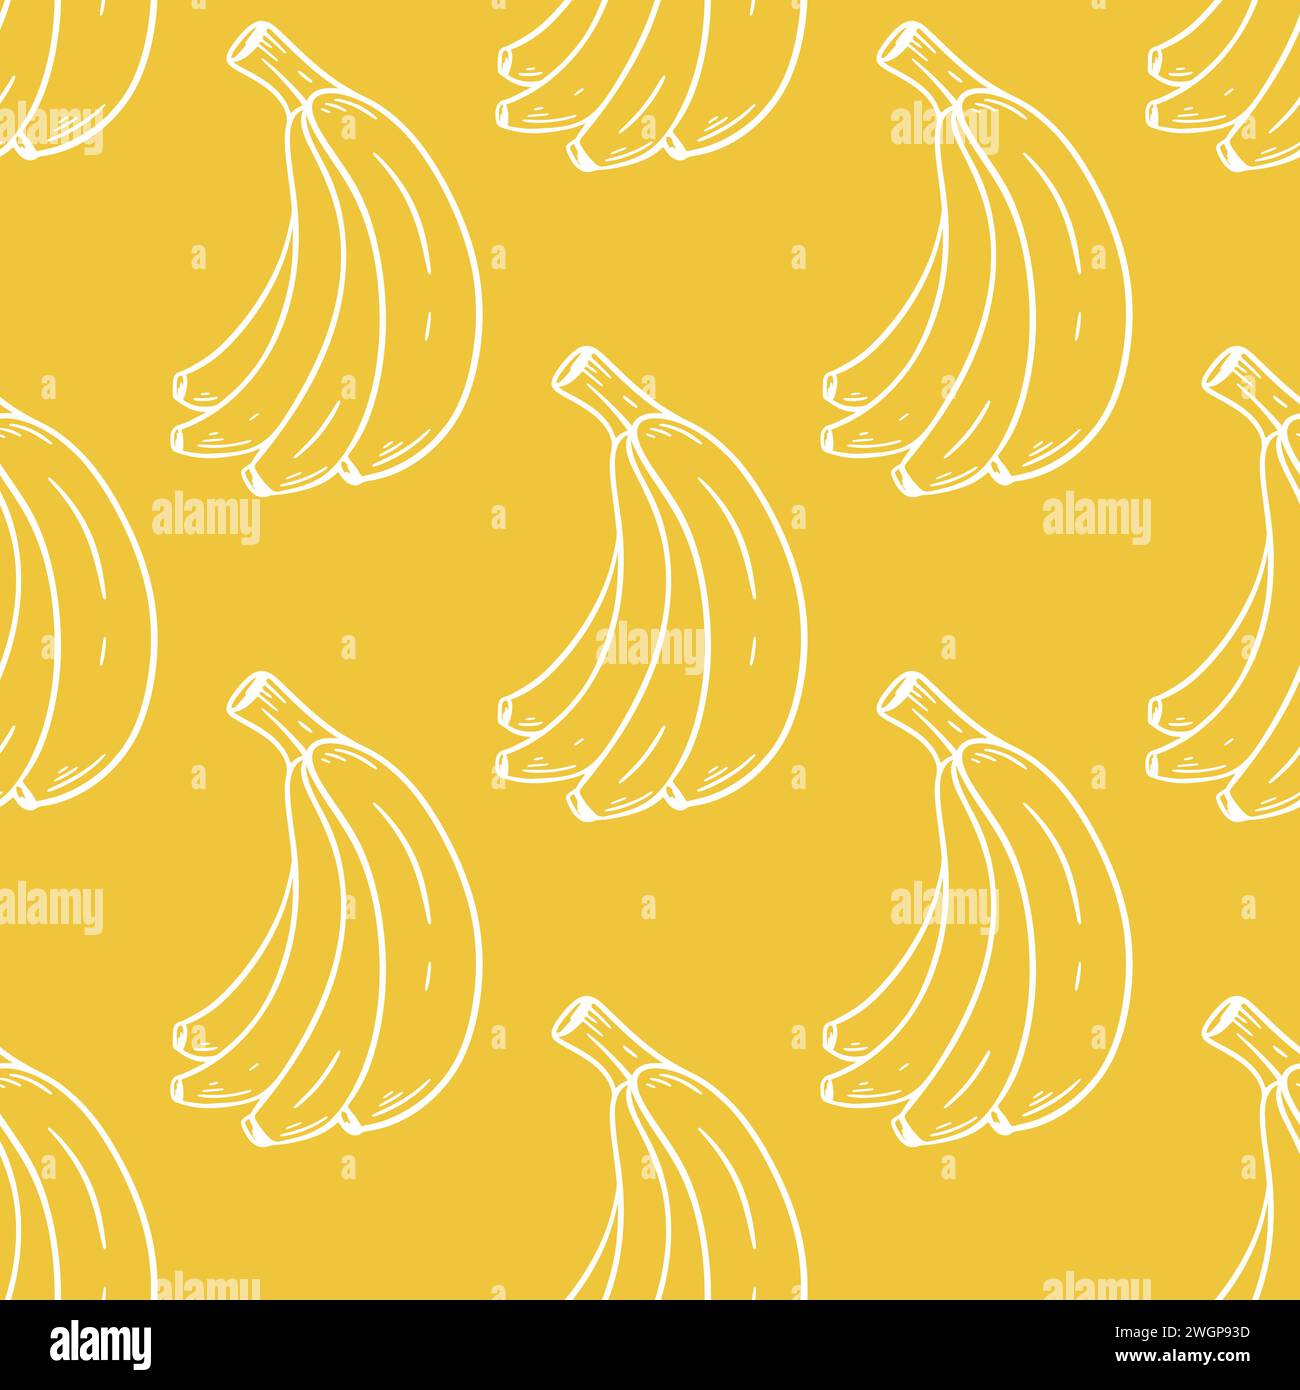 Banane bianche su sfondo giallo. Motivo senza cuciture con banane mature. Stampa estiva tropicale di frutta per tessuti, imballaggi, carta e design, Illustrazione Vettoriale